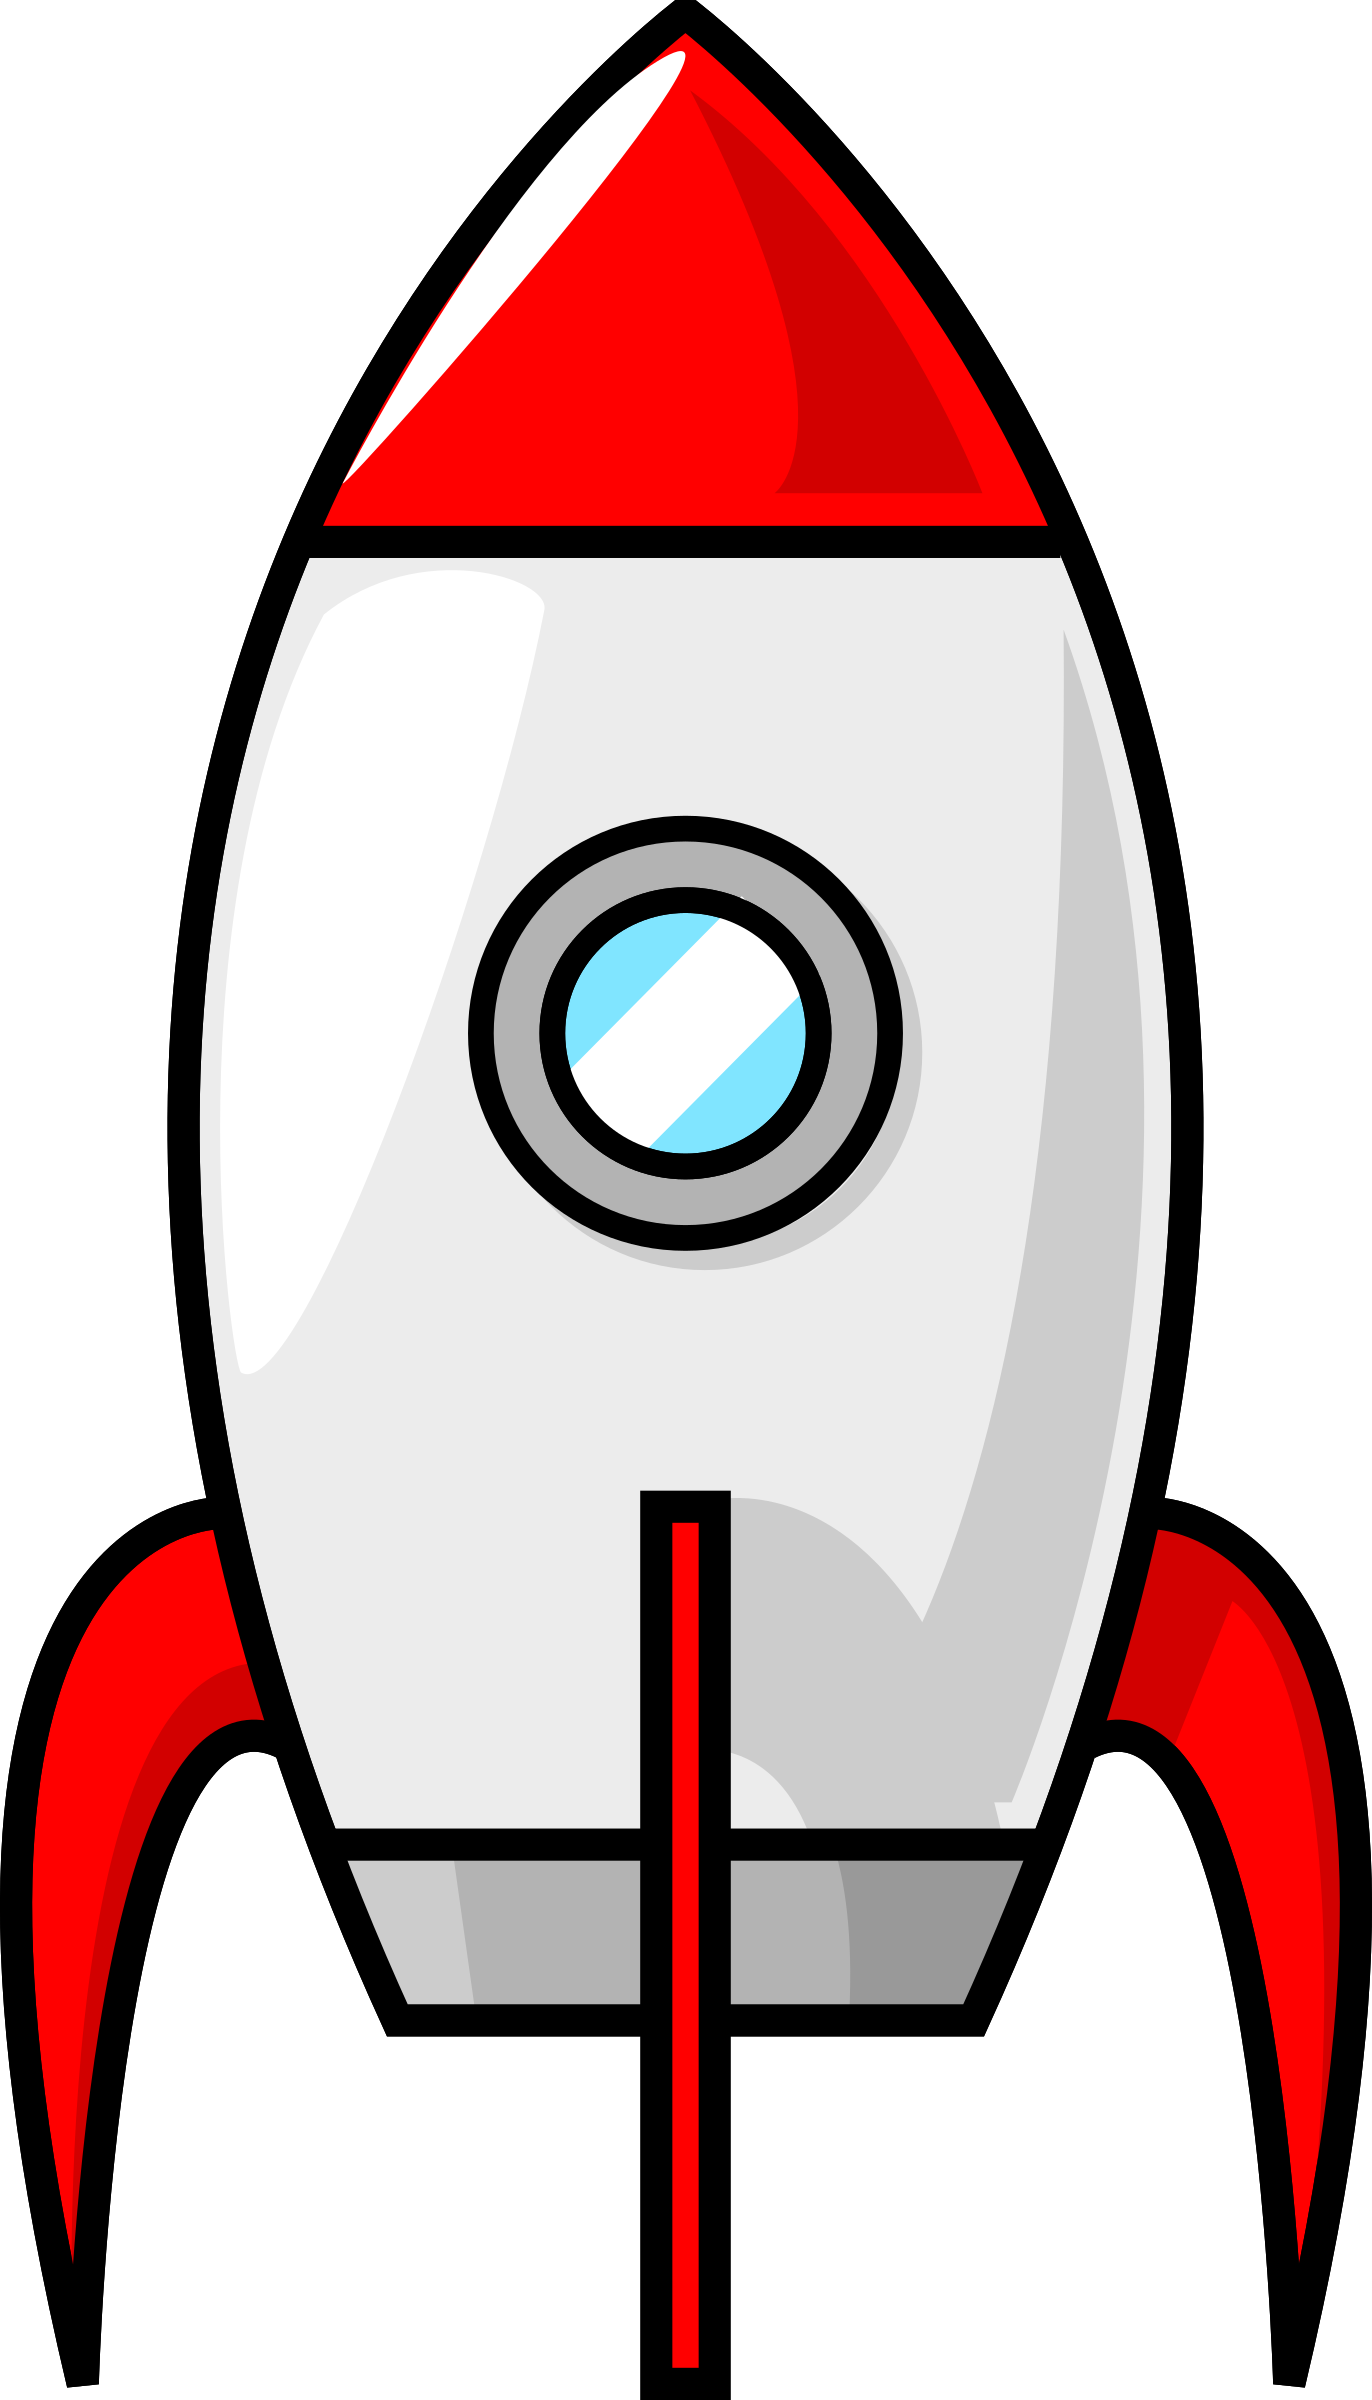 وکتور جادویی موشک قرمز و سفید خوشگل با فرمت PNG